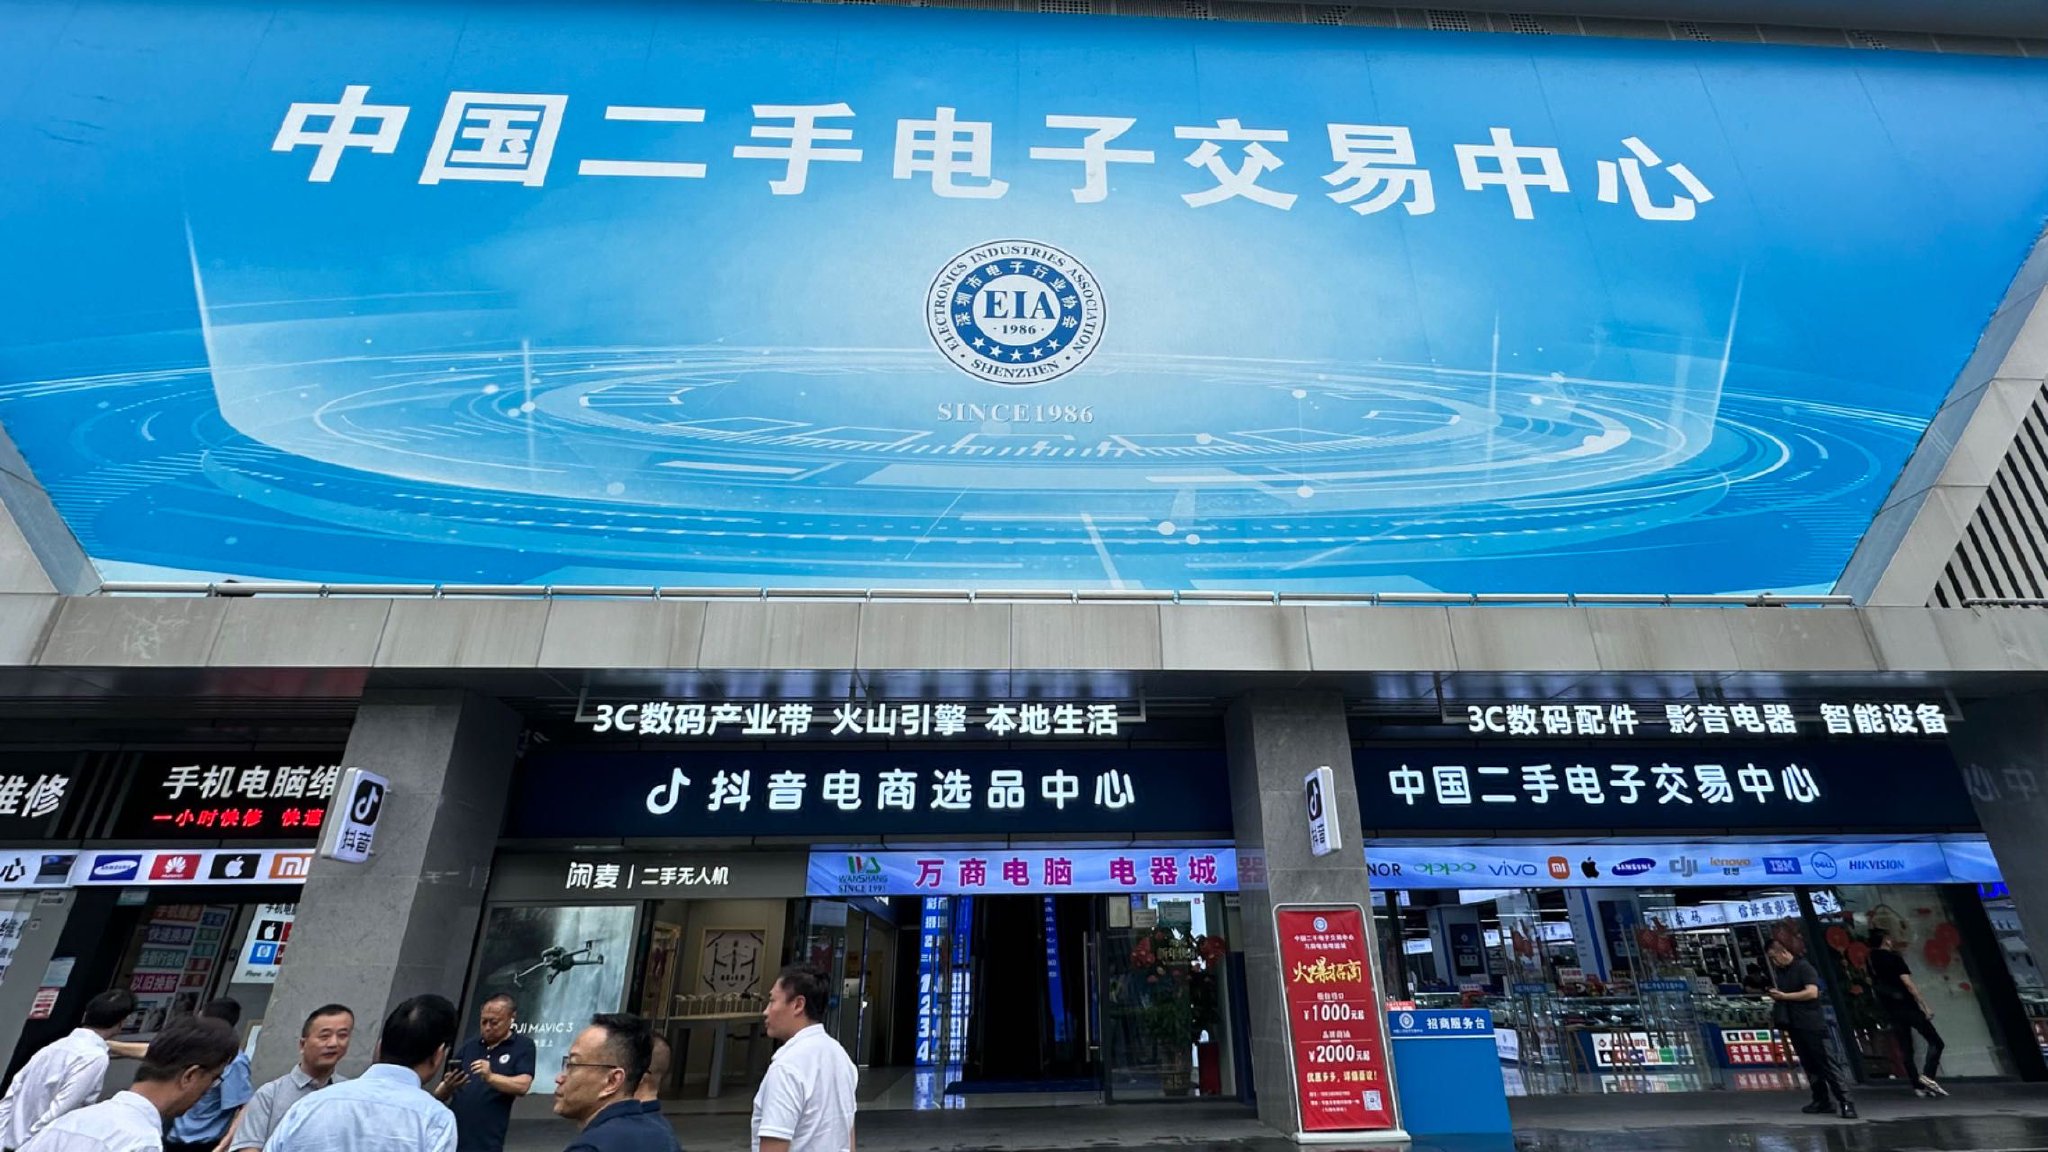 电子交易“全国第一街”华强北的二手电子交易中心。中国经济网记者 朱晓航/摄